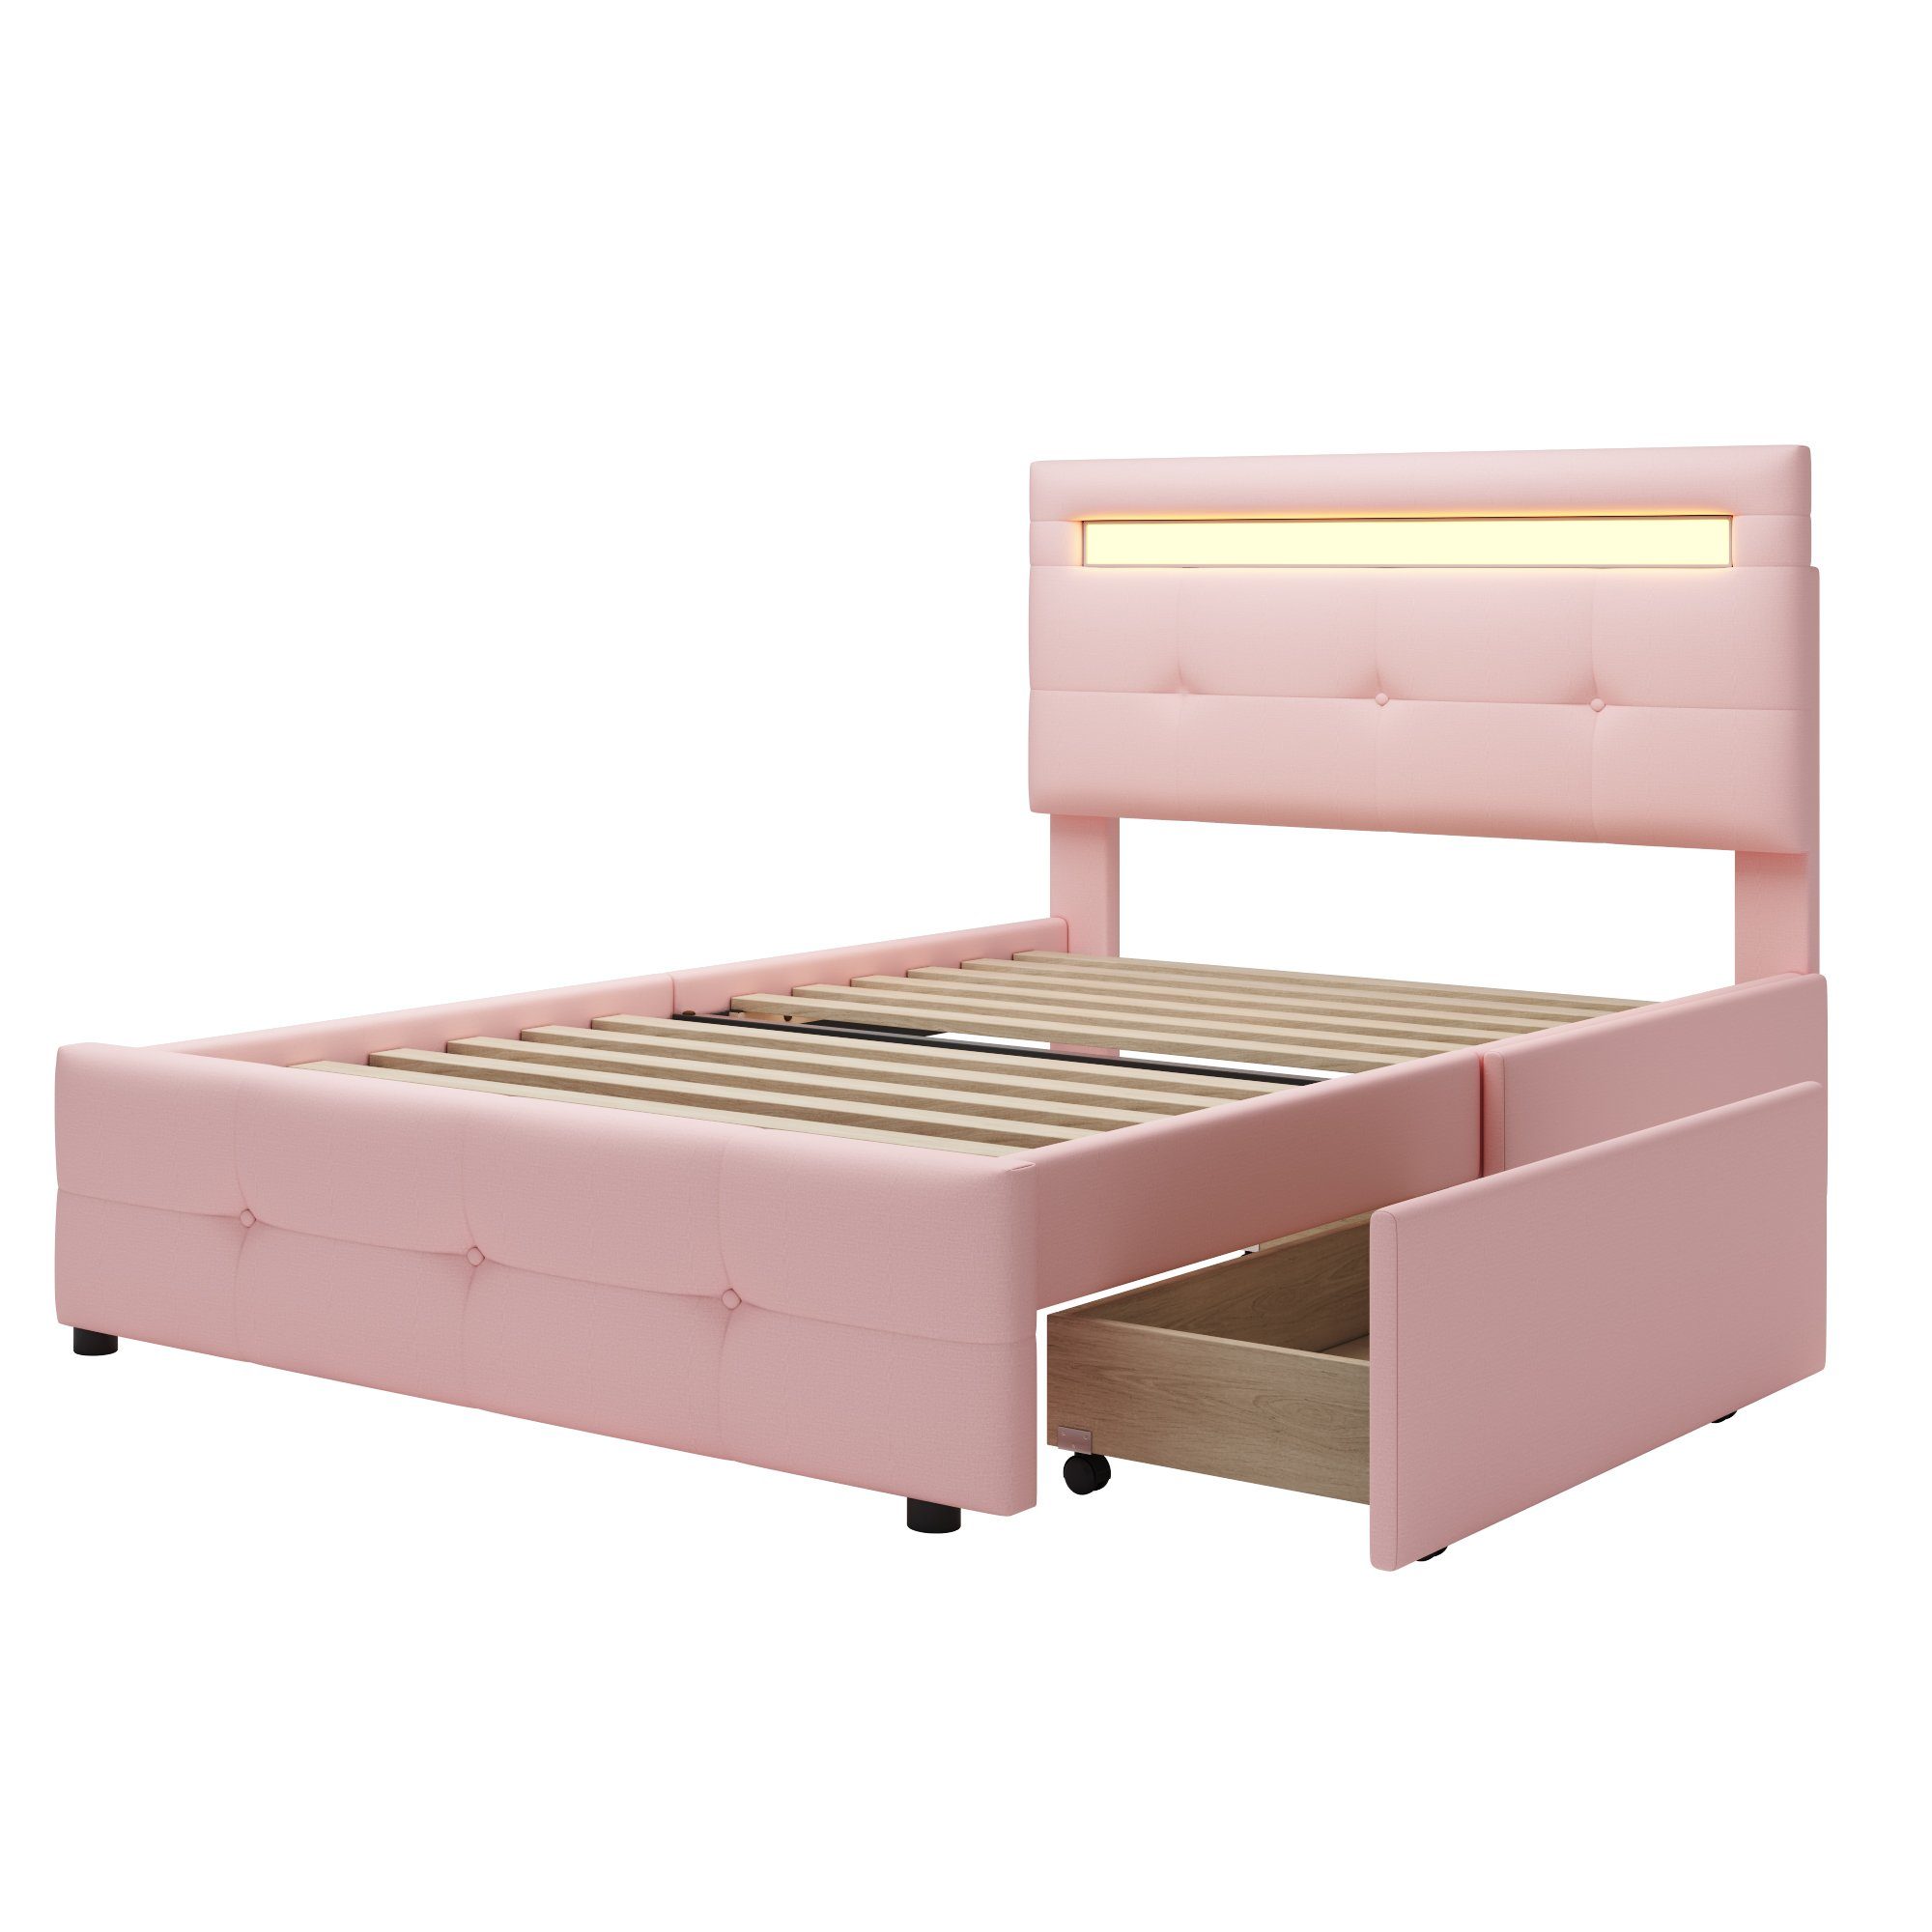 90*200cm ohne 2 WISHDOR LED-Leuchten, Schubladen, hautfreundlicher Einzelbett Polsterbett Bett (mit Jugendbett rosa Matratze flach), Kinderbett Leinenpolsterung